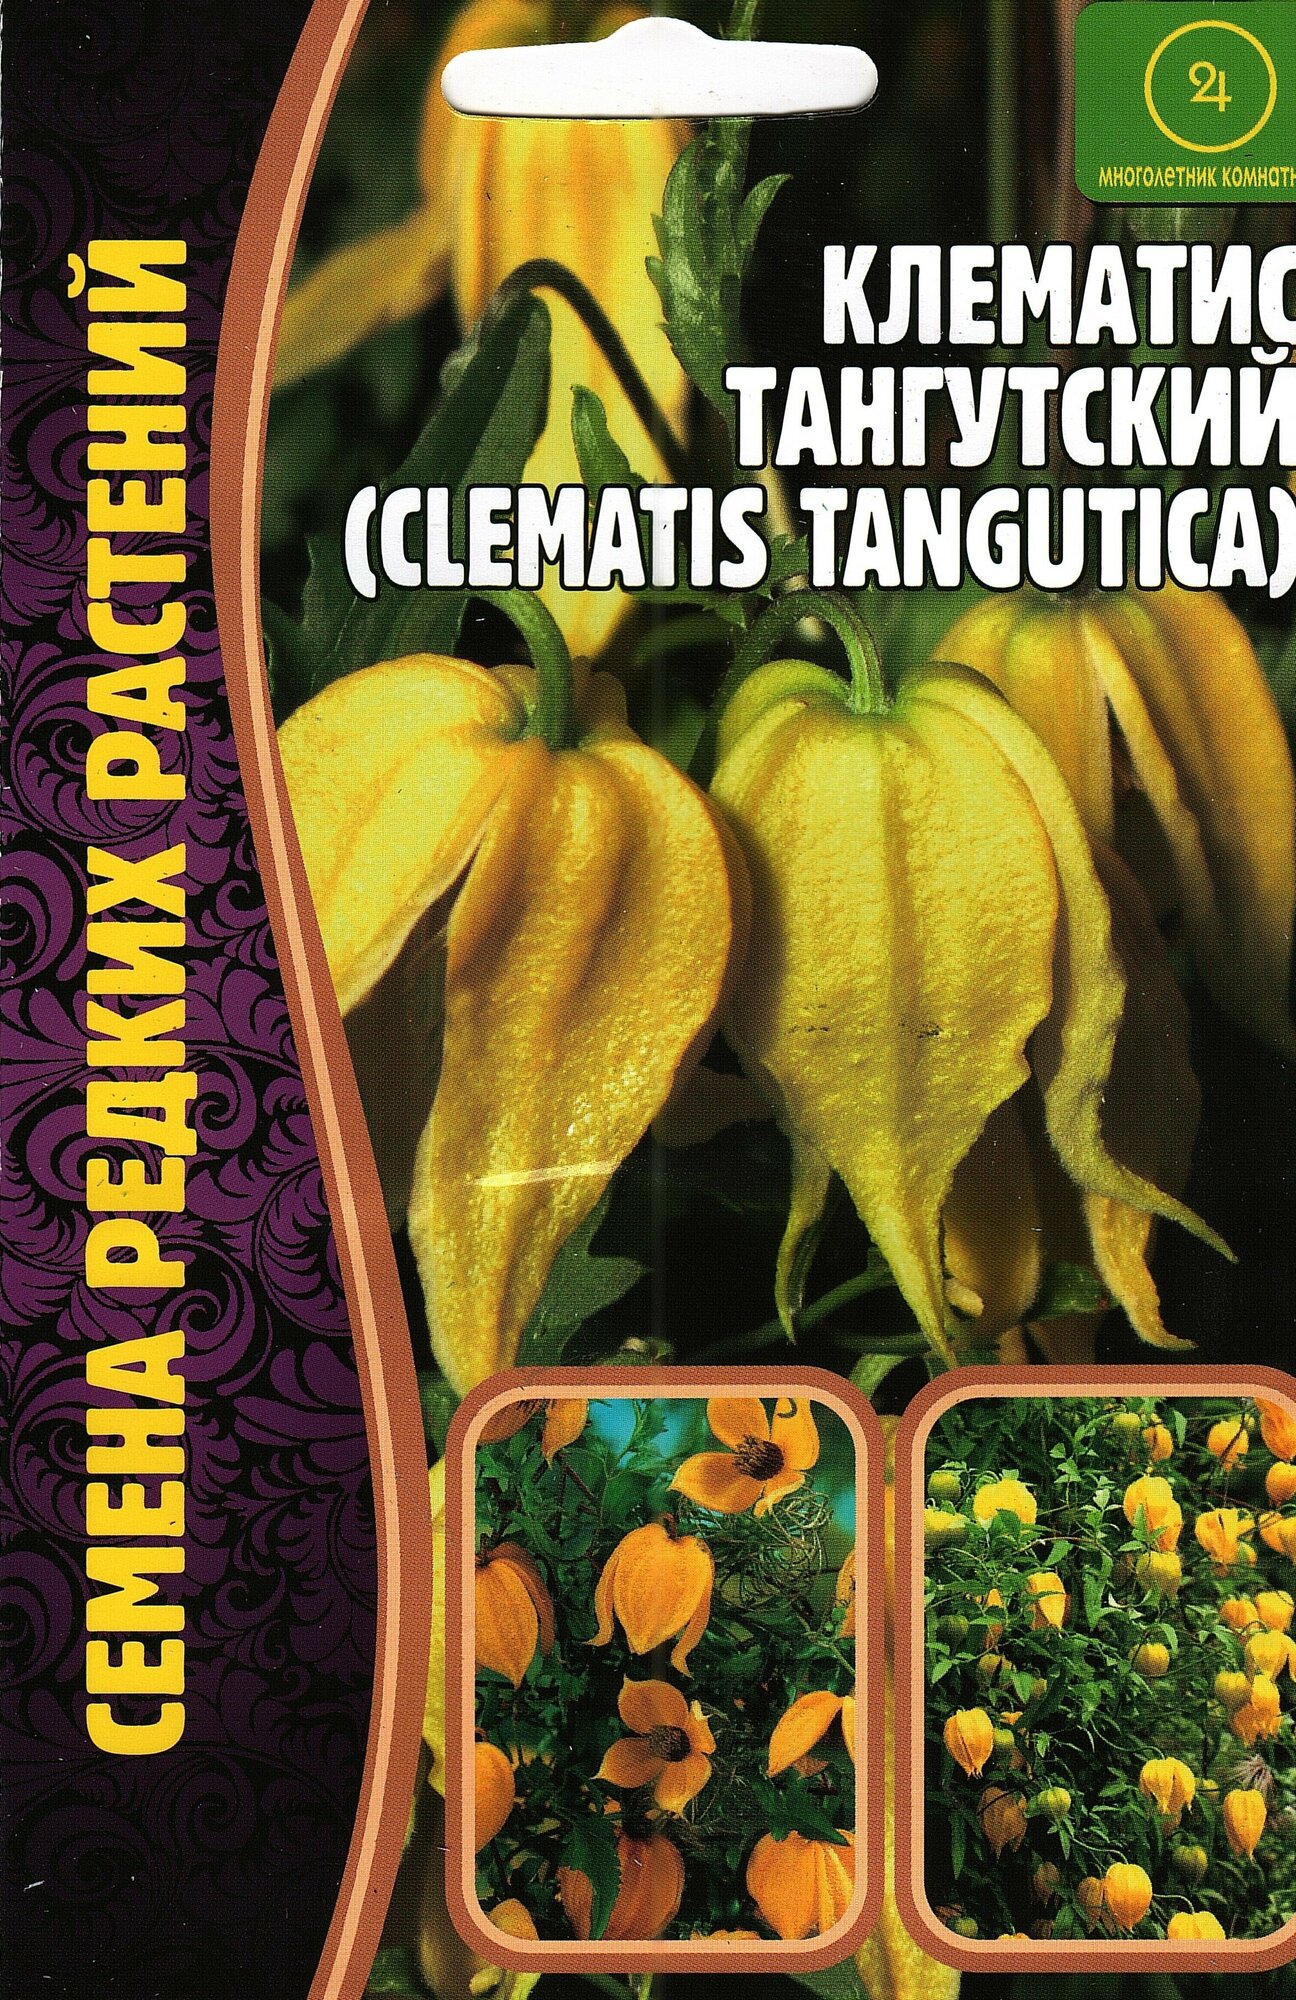 Клематис тангутский clematis tangutica семена цветов лиана многолетняя ( 1 уп: 10 семян )